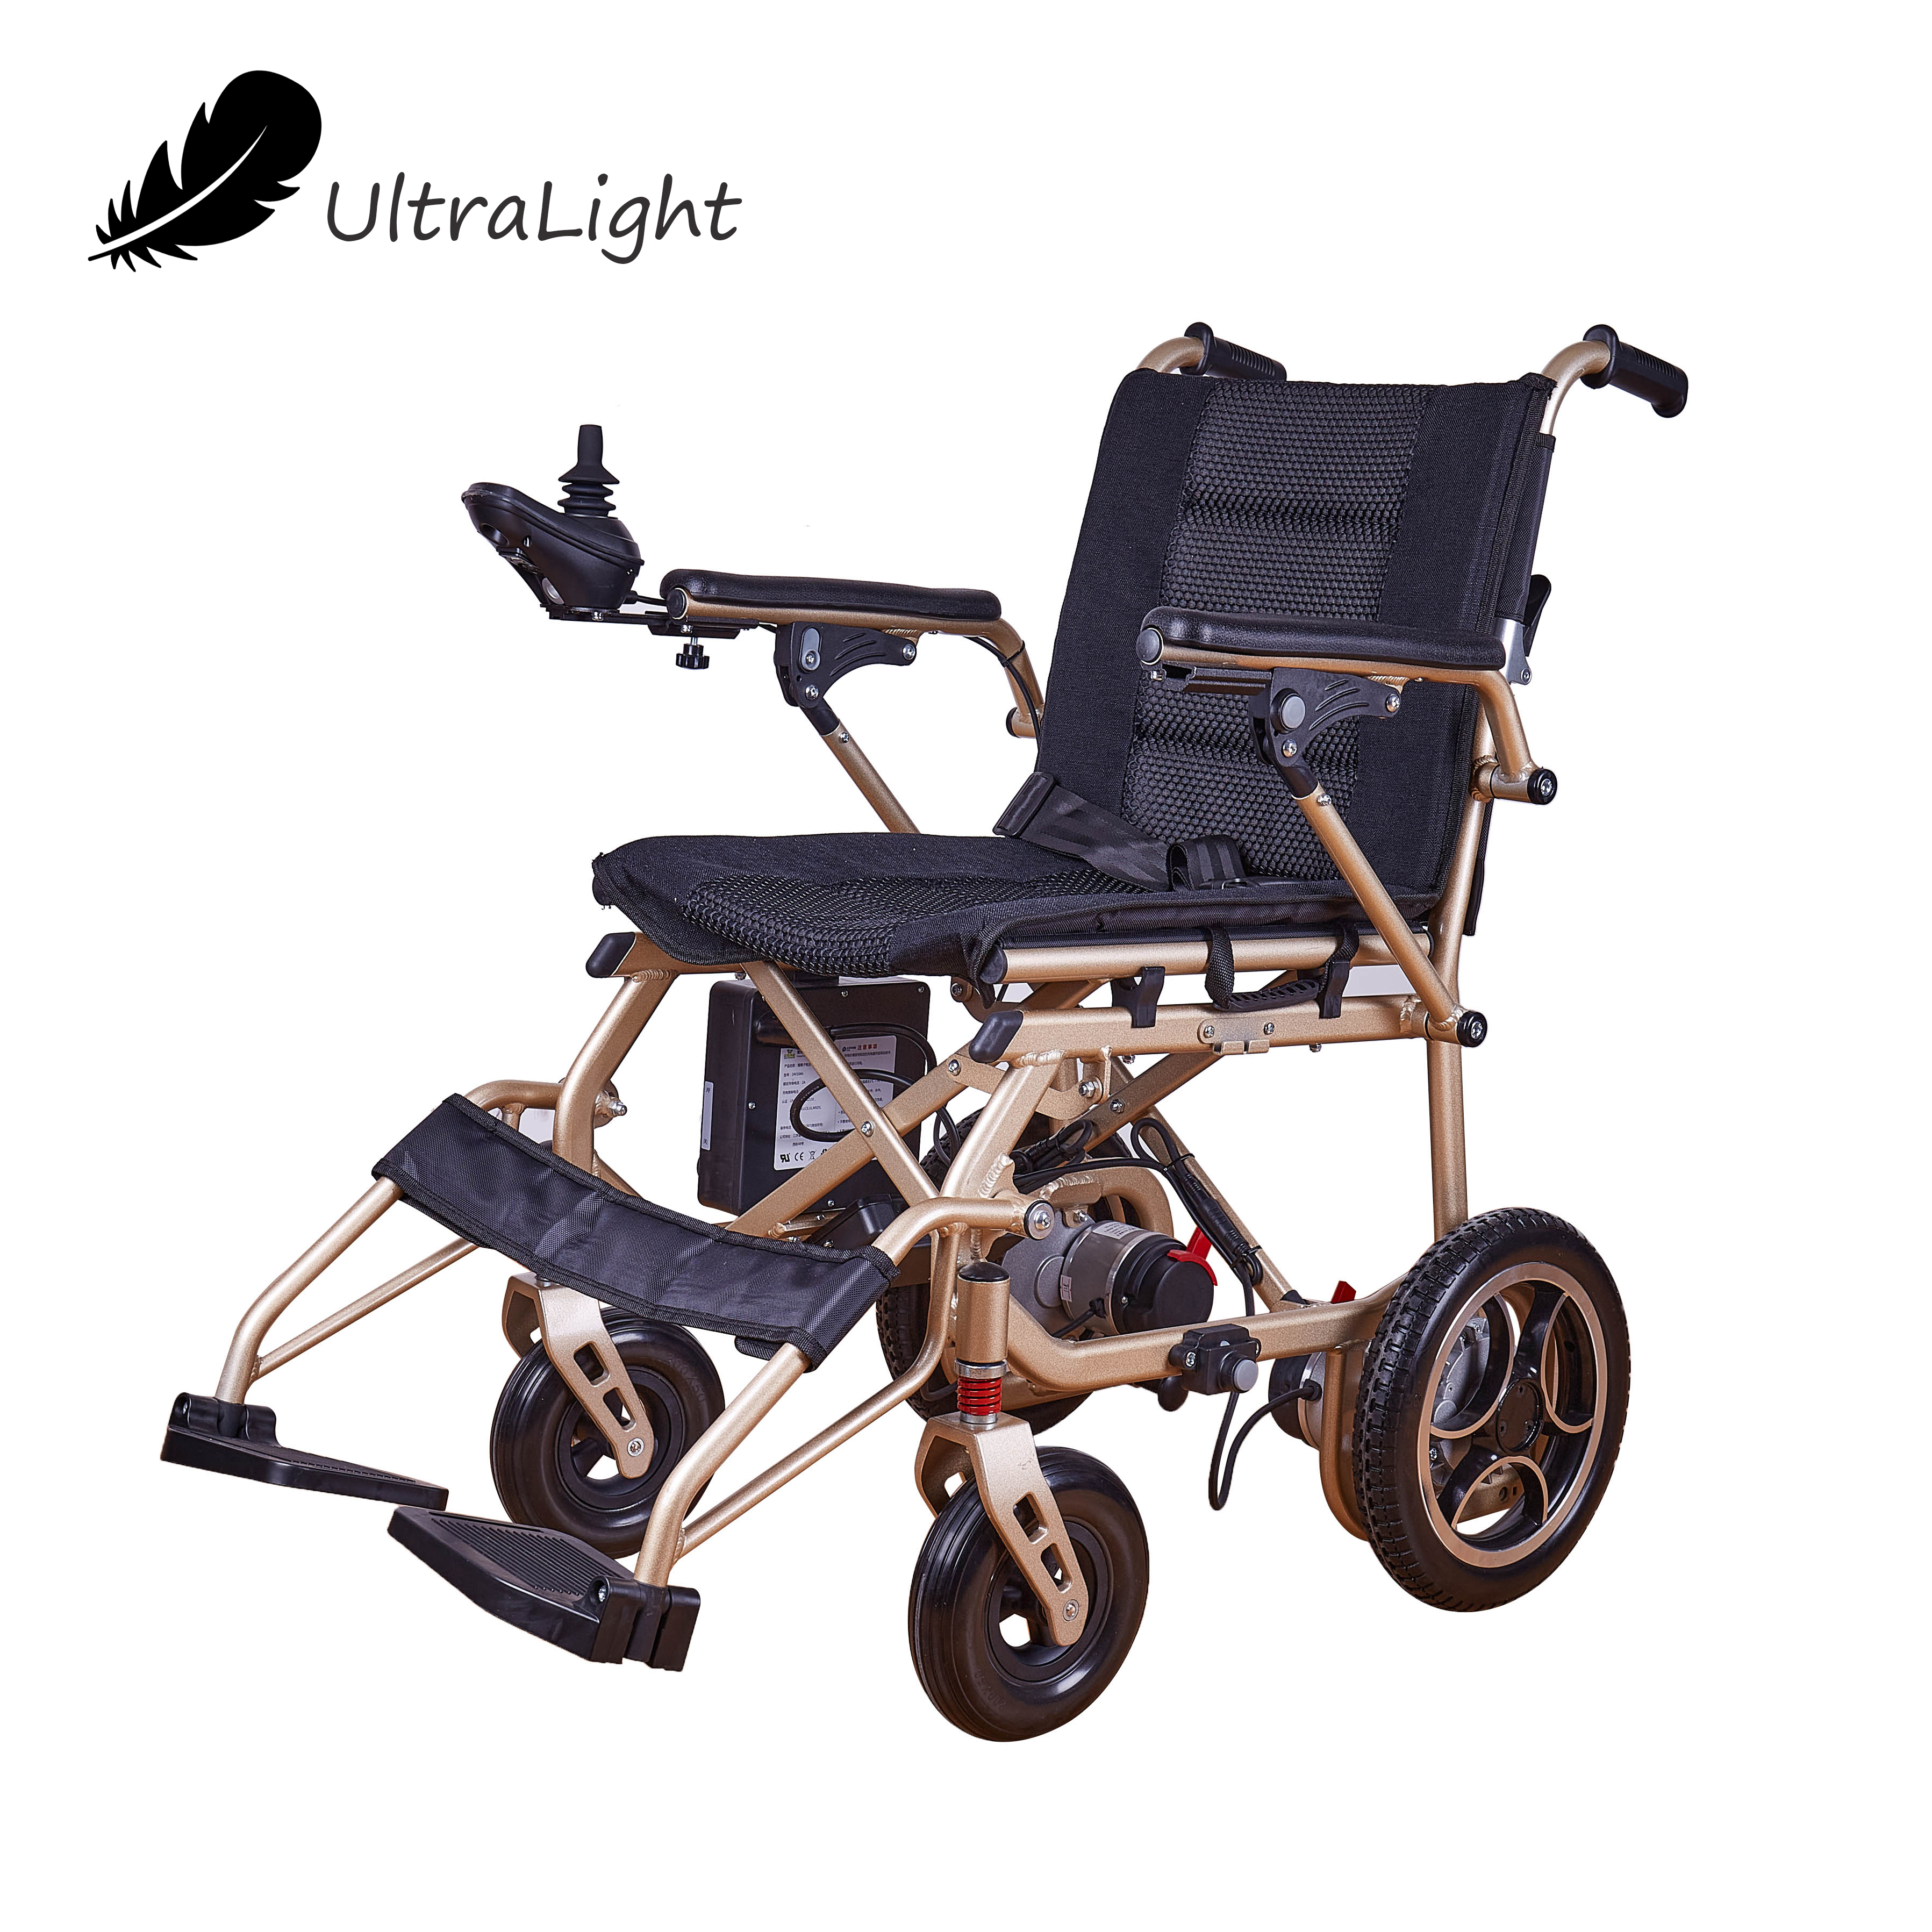 Zusammenklappbarer elektronischer Rollstuhl für Rehabilitationstherapie, Elektrorollstuhl mit hoher Rückenlehne und verstellbarer Rückenlehne für Behinderte, für alte und behinderte Menschen. Ausgewähltes Bild